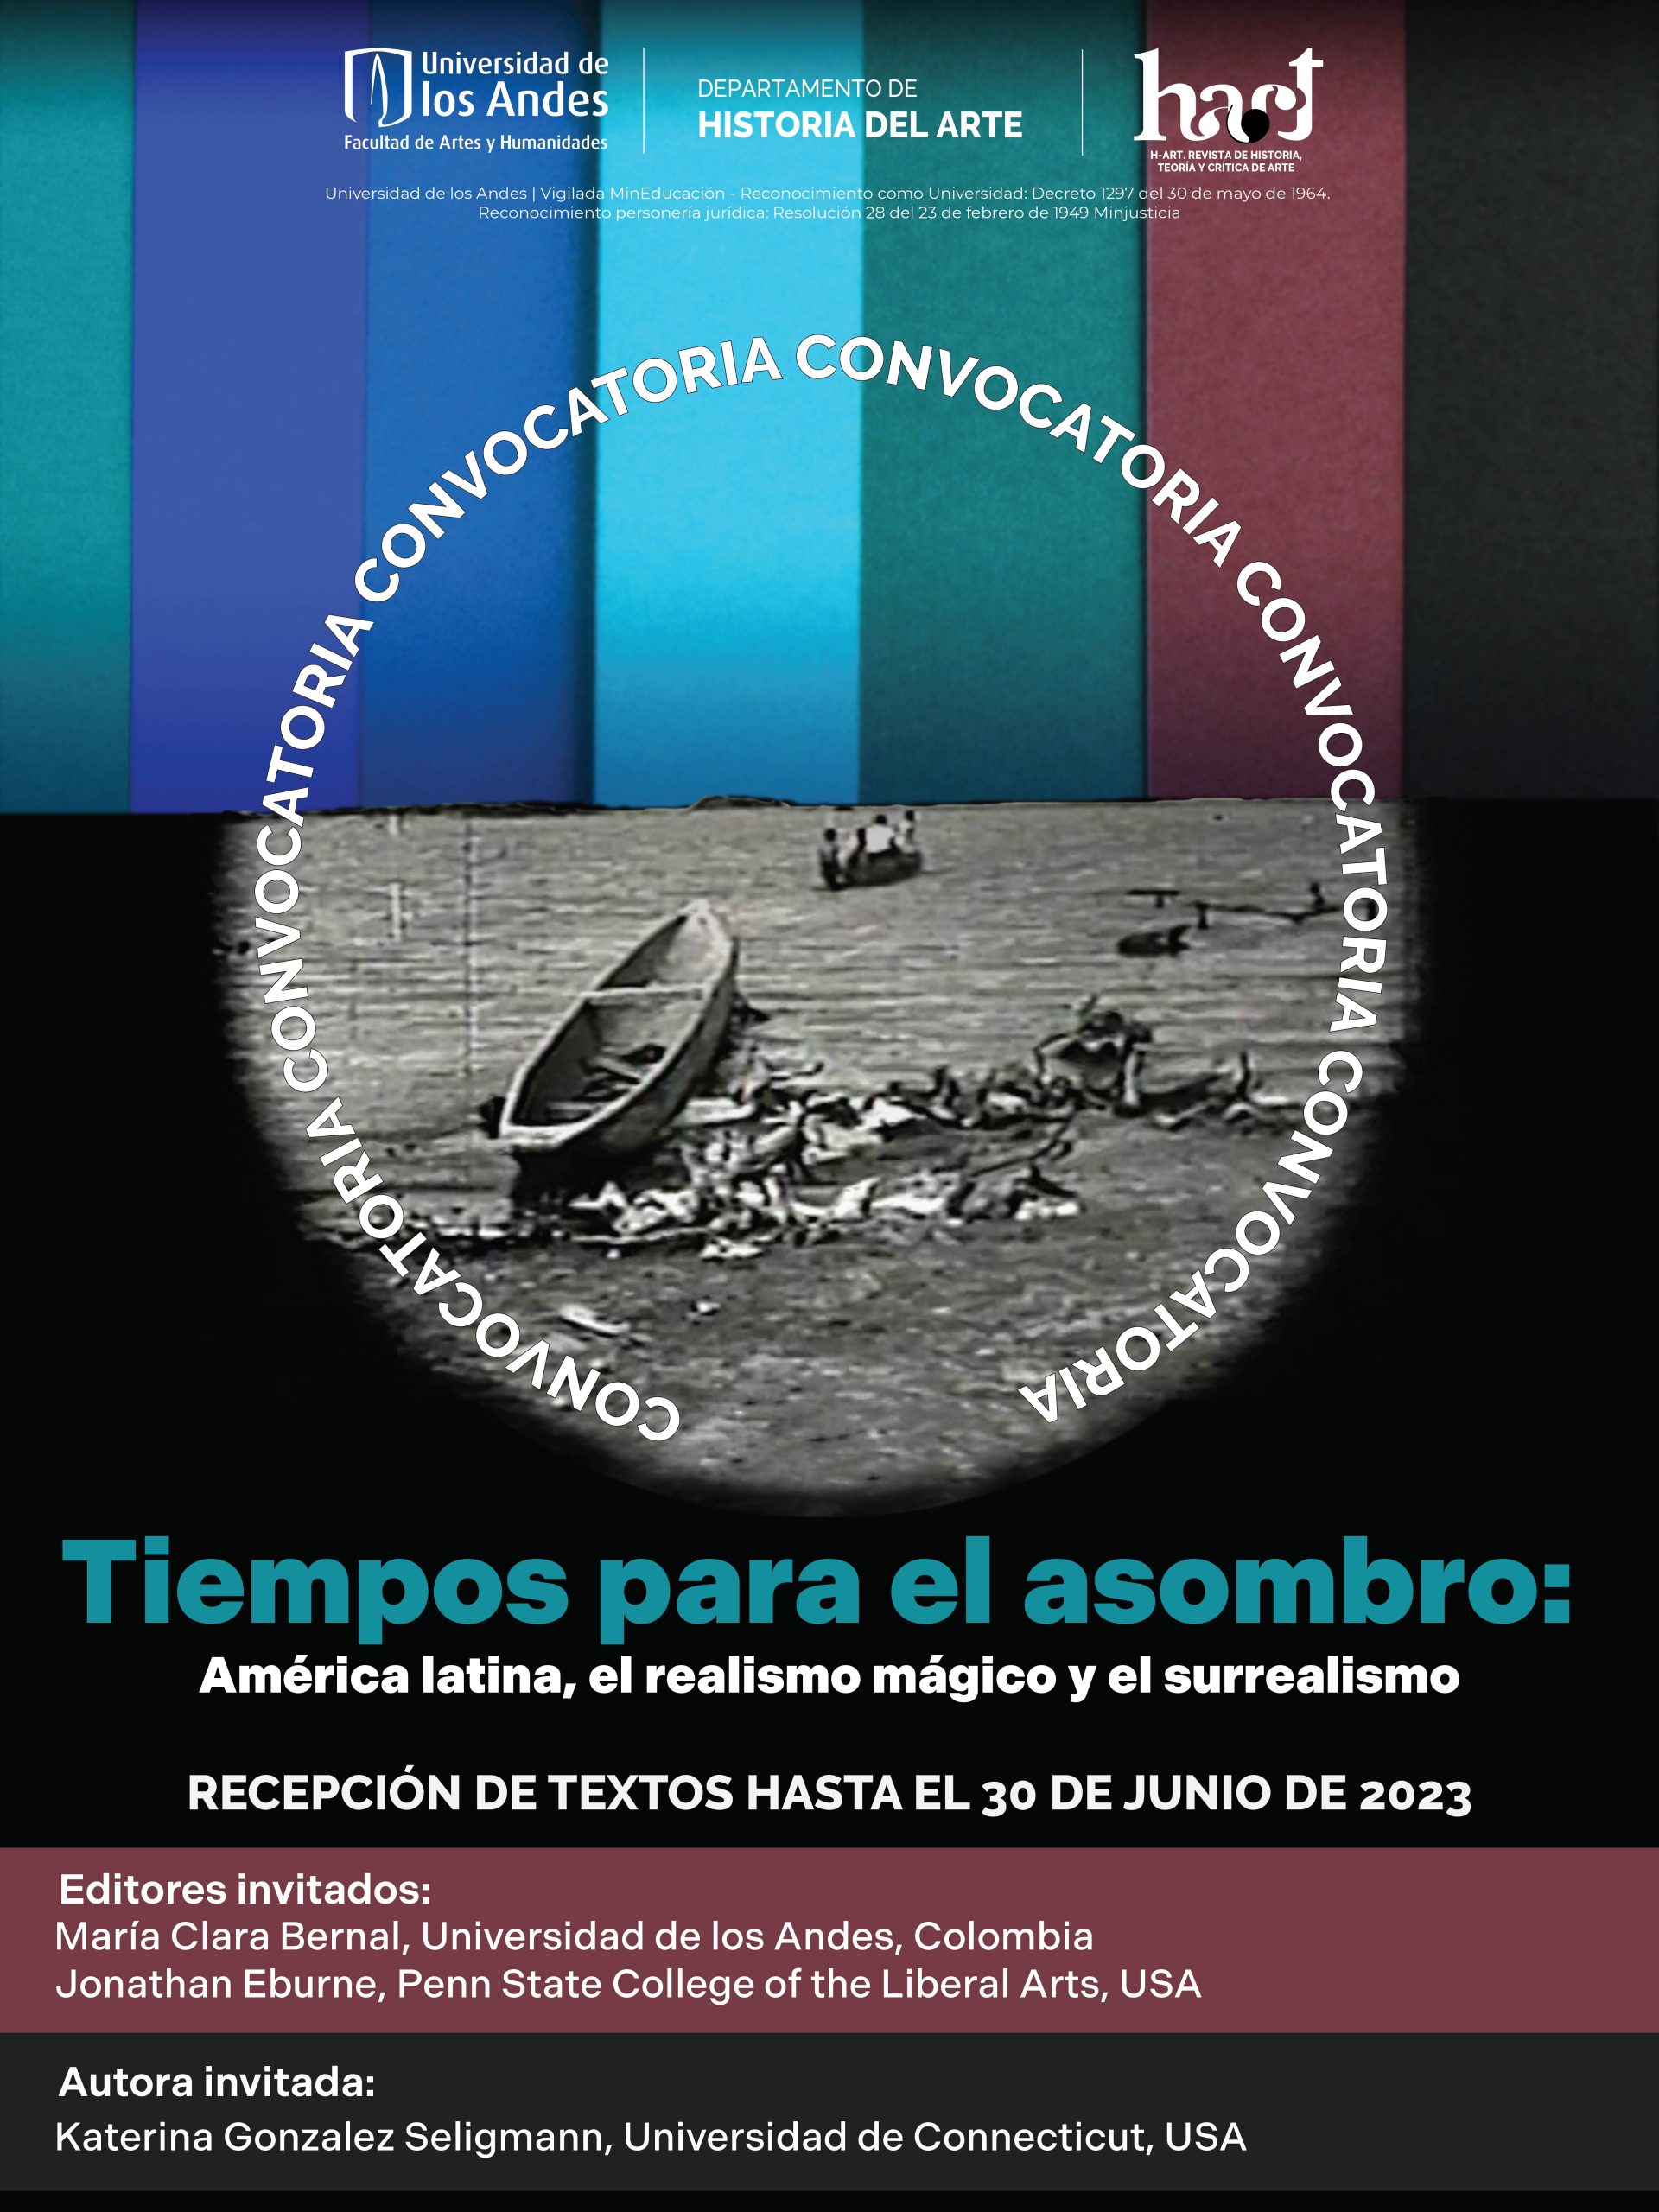 Convocatoria Revista H-ART # 16: “Tiempos para el asombro: América latina, el realismo mágico y el surrealismo”